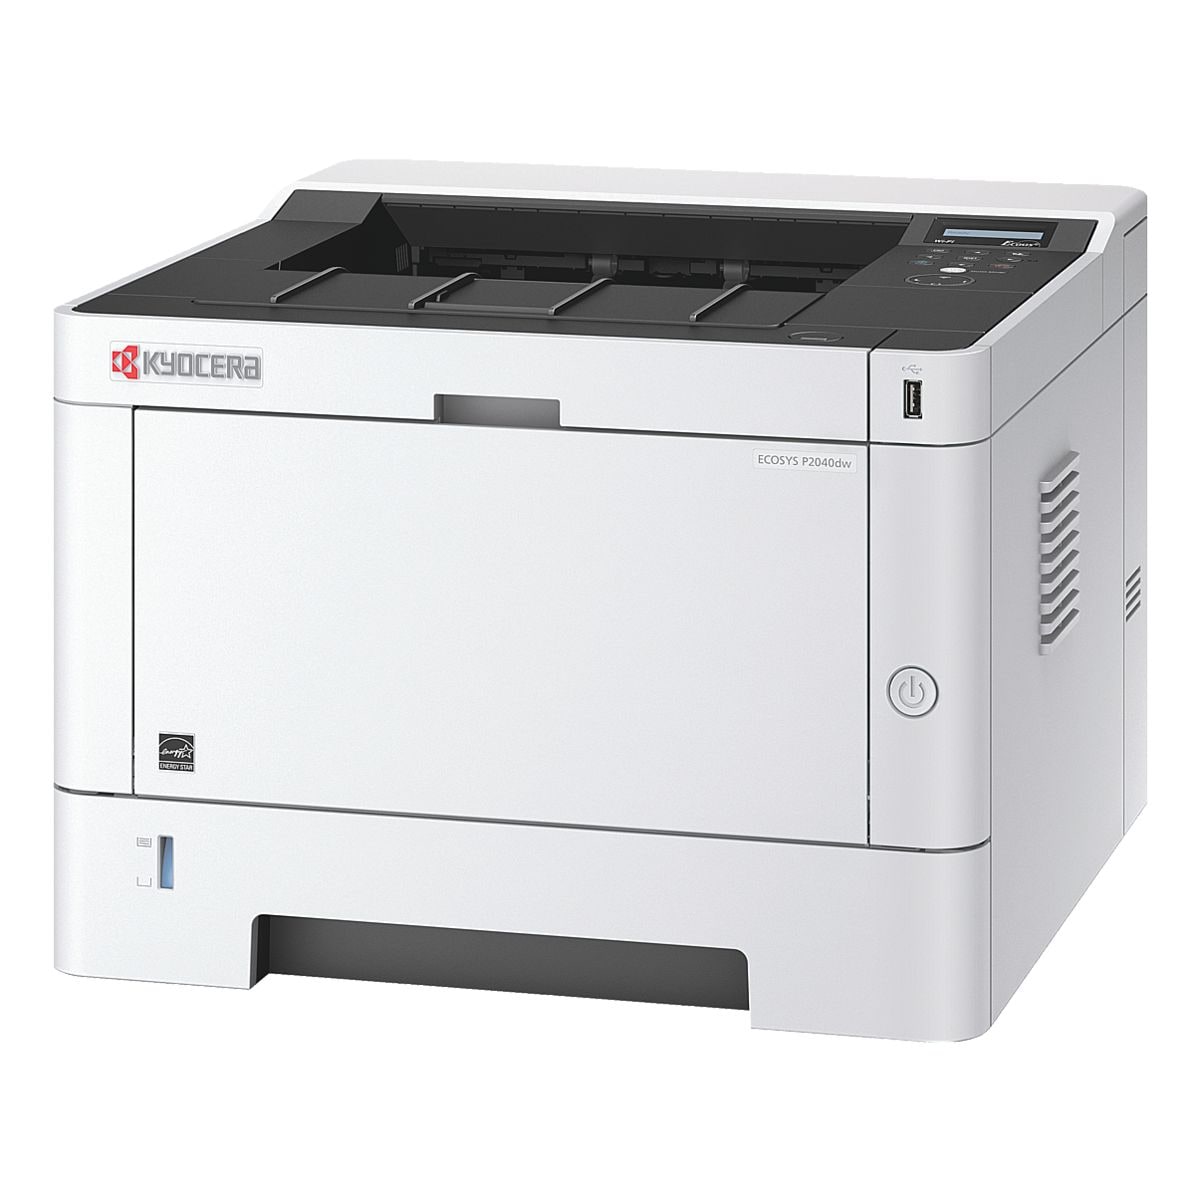 Kyocera ECOSYS P2040DW Laserdrucker, A4 schwarz wei Laserdrucker, 1200 x 1200 dpi, mit WLAN und LAN